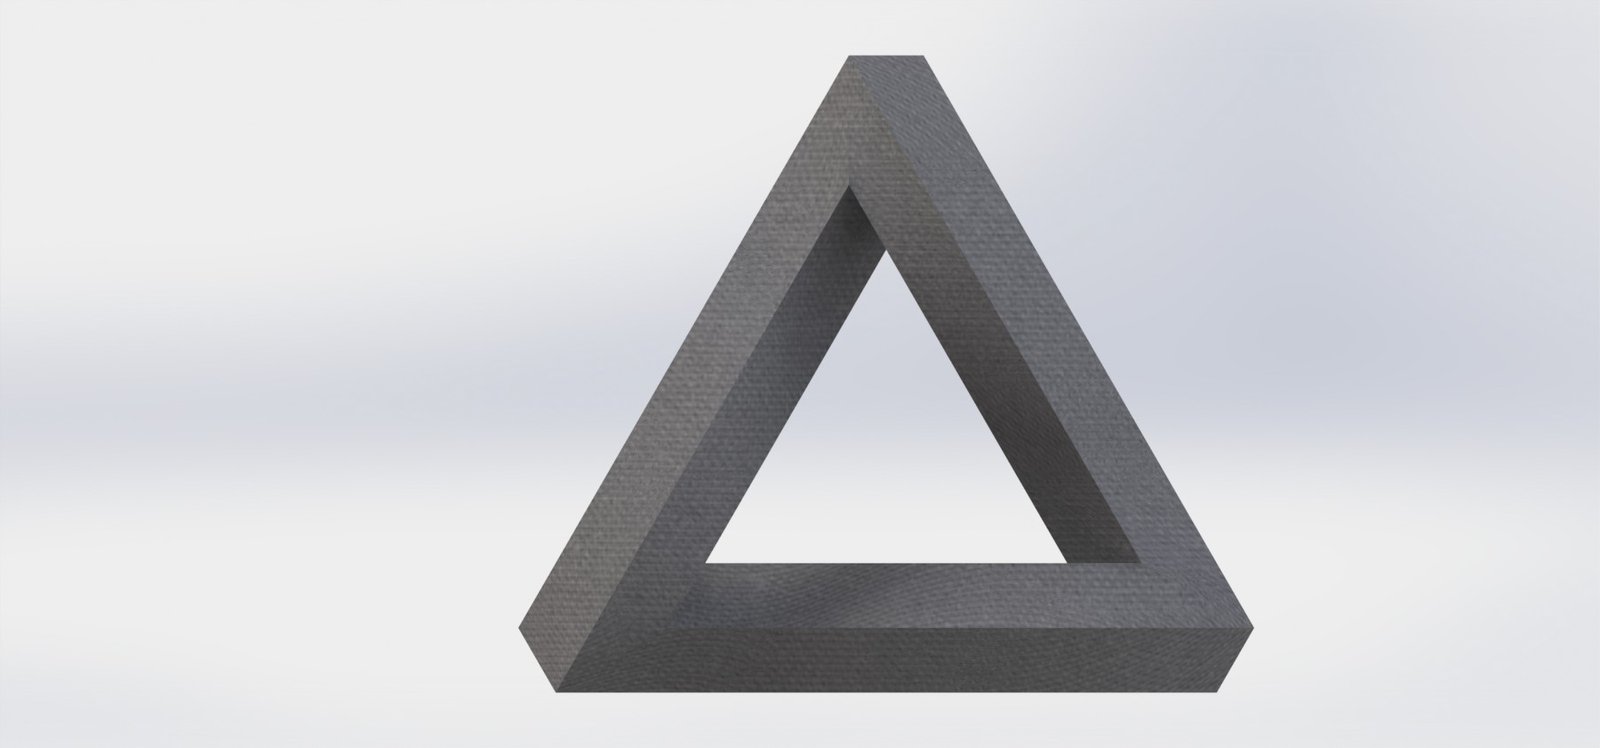 Triangulo de Penrose por Pedro Luis Ruiz. World Cup SolidWorks